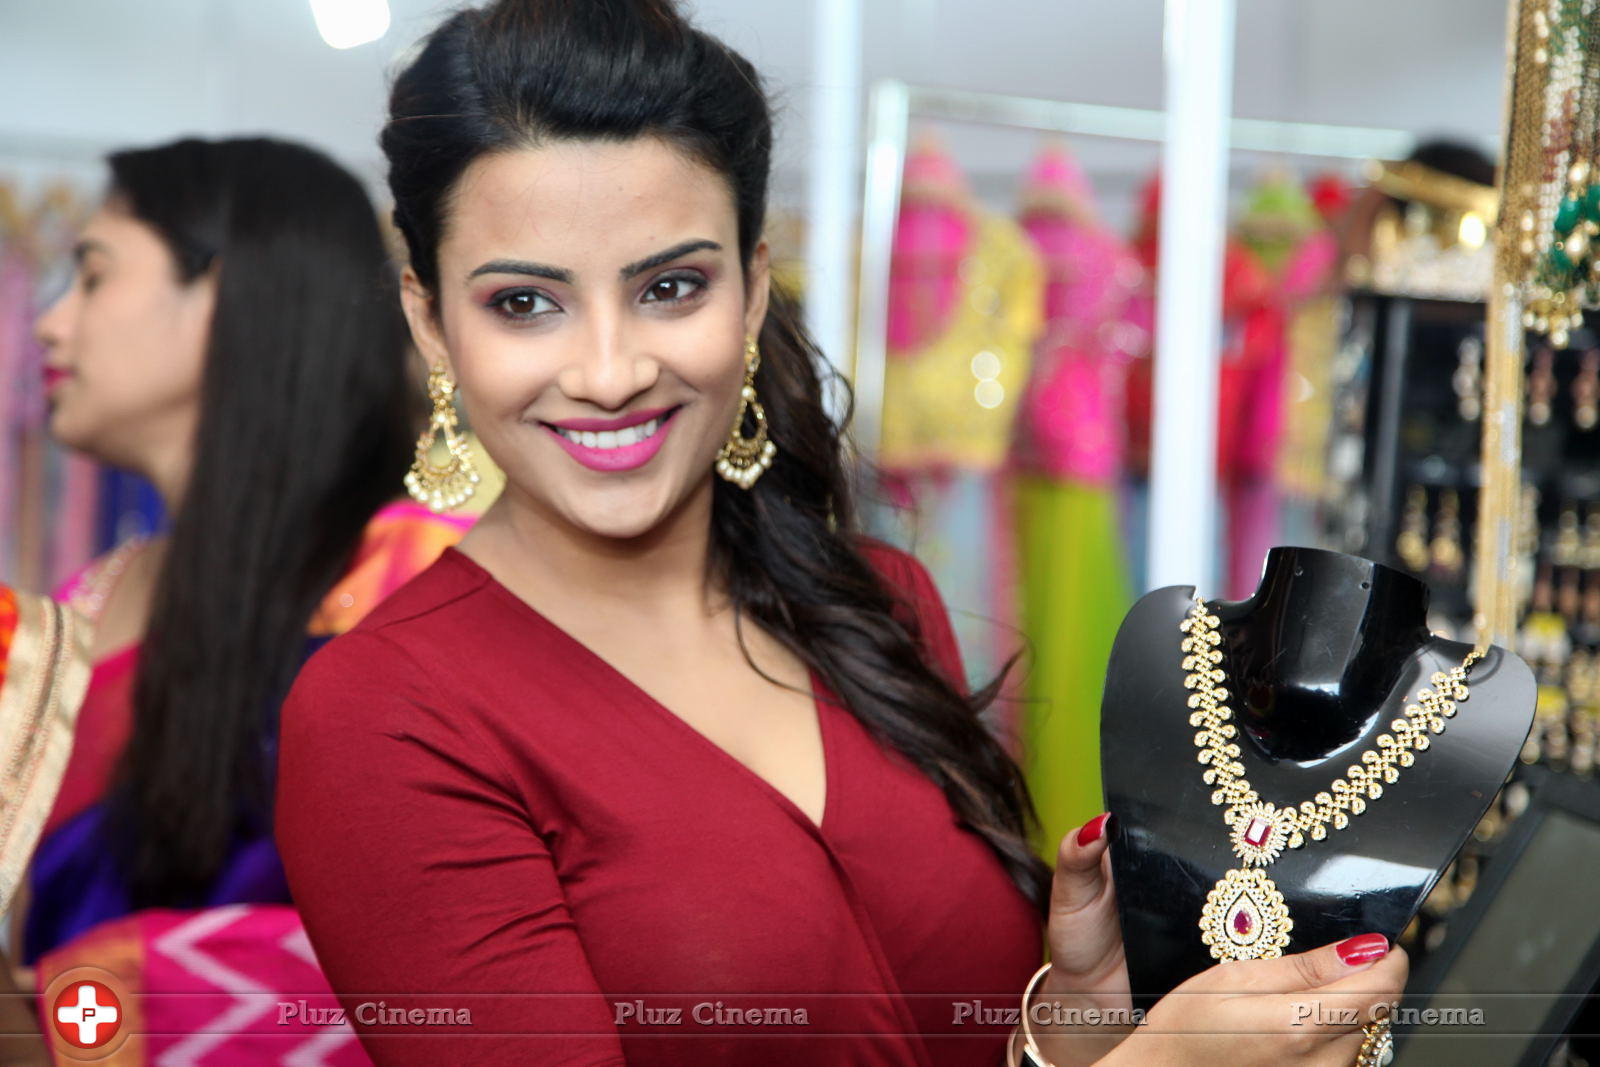 Jyoti Sethi - Actress Jyotii Sethi Inaugurates Styles and Weaves Life Style Expo at Visakhapatnam Photos | Picture 1091710